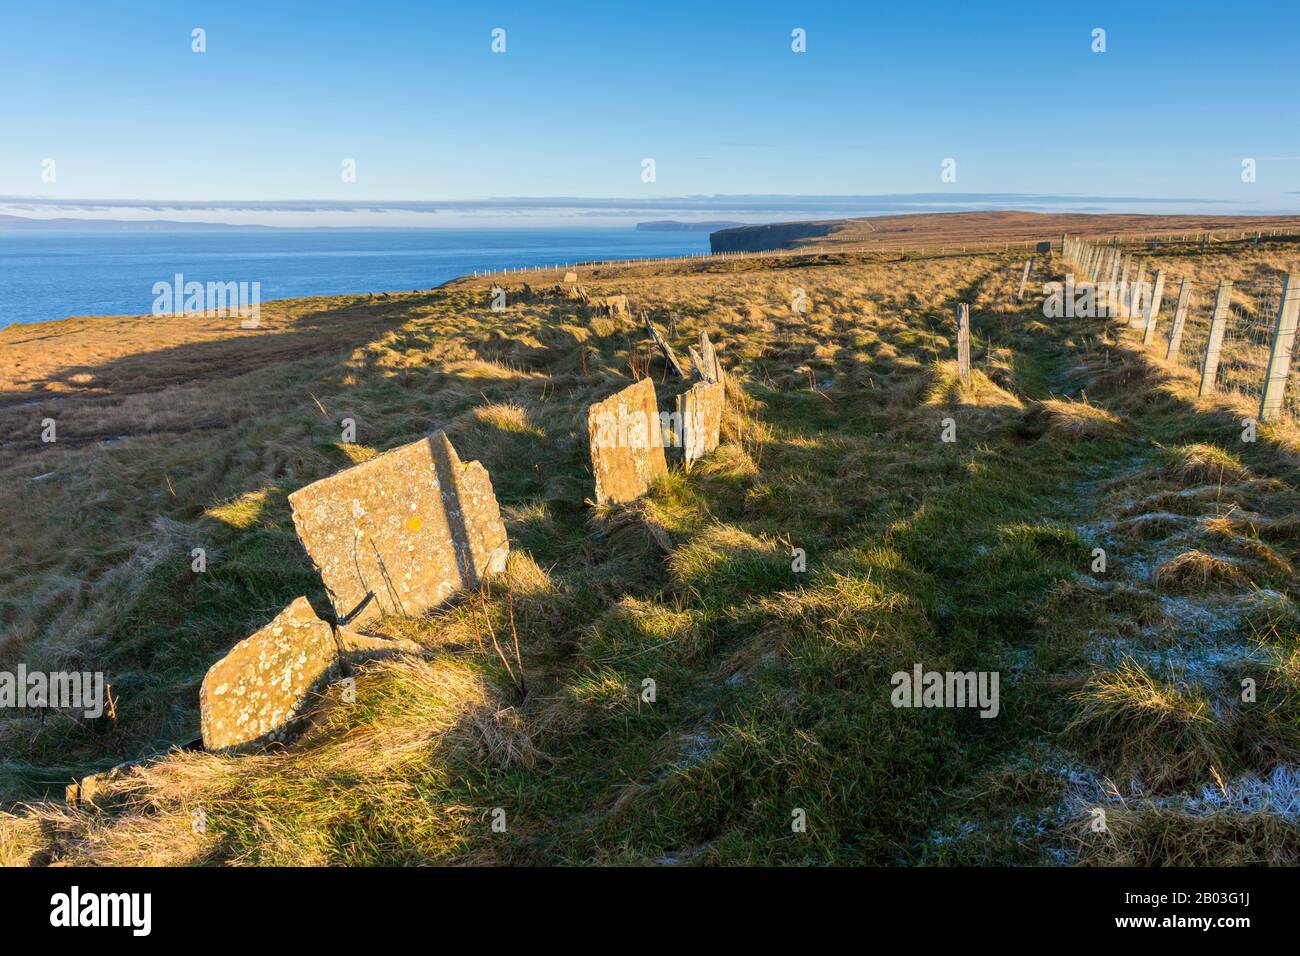 Platten aus Caithness Sandstein, früher als Feldgrenzen verwendet, in der Nähe von Holborn Head, Scrabster, in der Nähe von Thurso, Caithness, Schottland, Großbritannien. Stockfoto